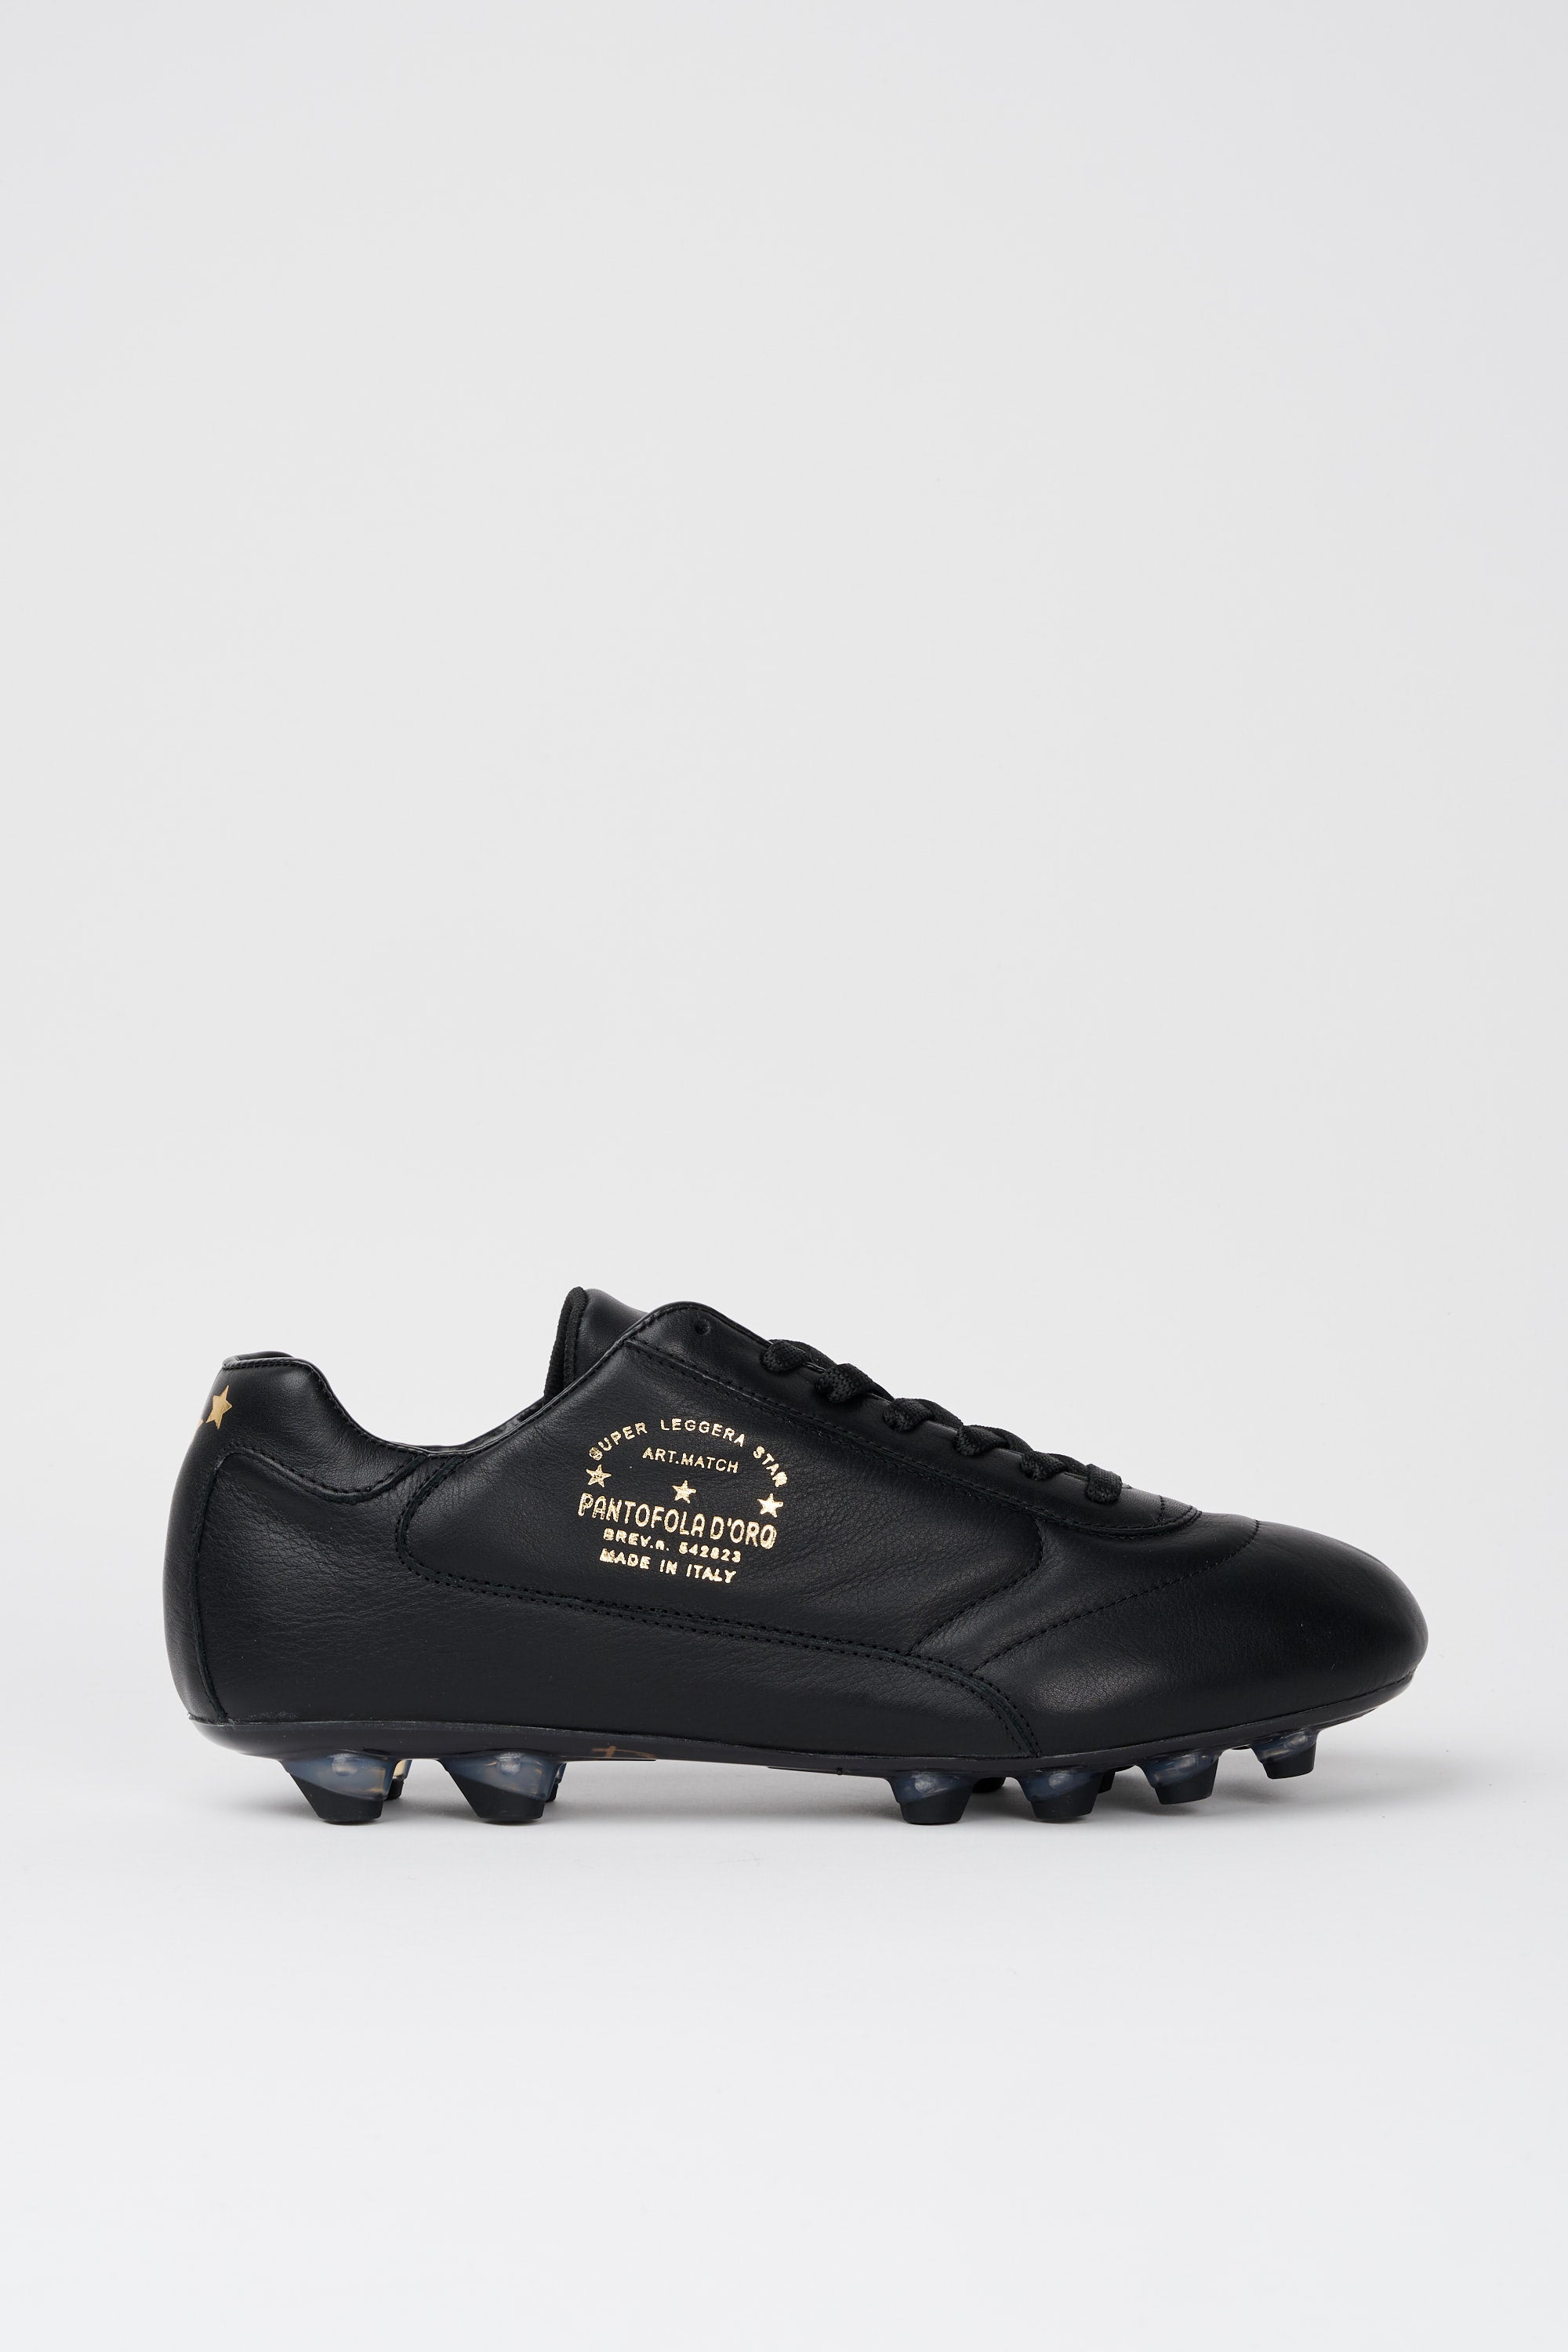 niettemin de eerste Wijzer Pantofola d'Oro Del Duca Leather Football Boot